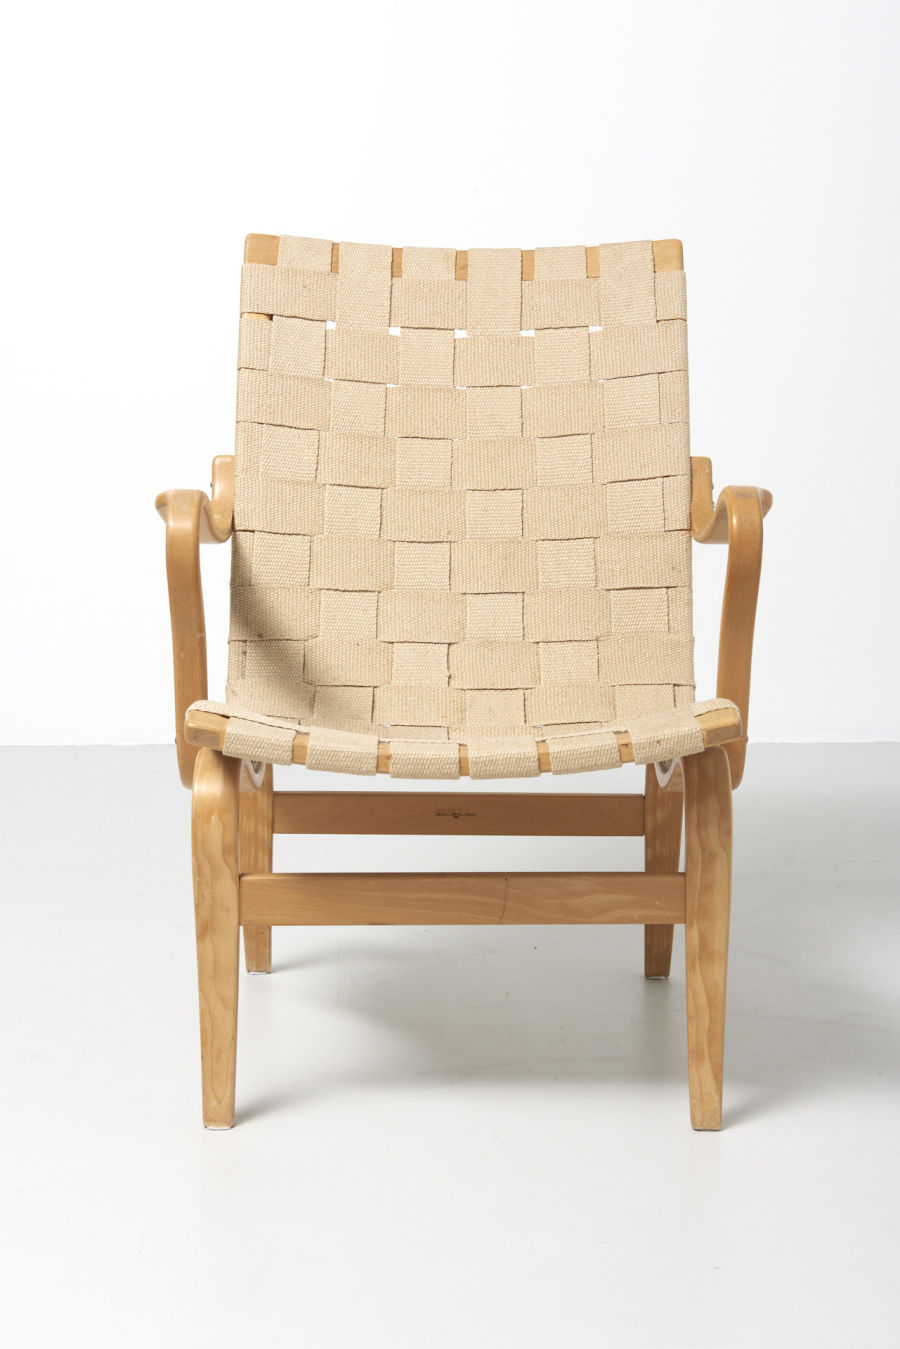 modestfurniture-vintage-2045-eva-chair-bruno-mathsson02